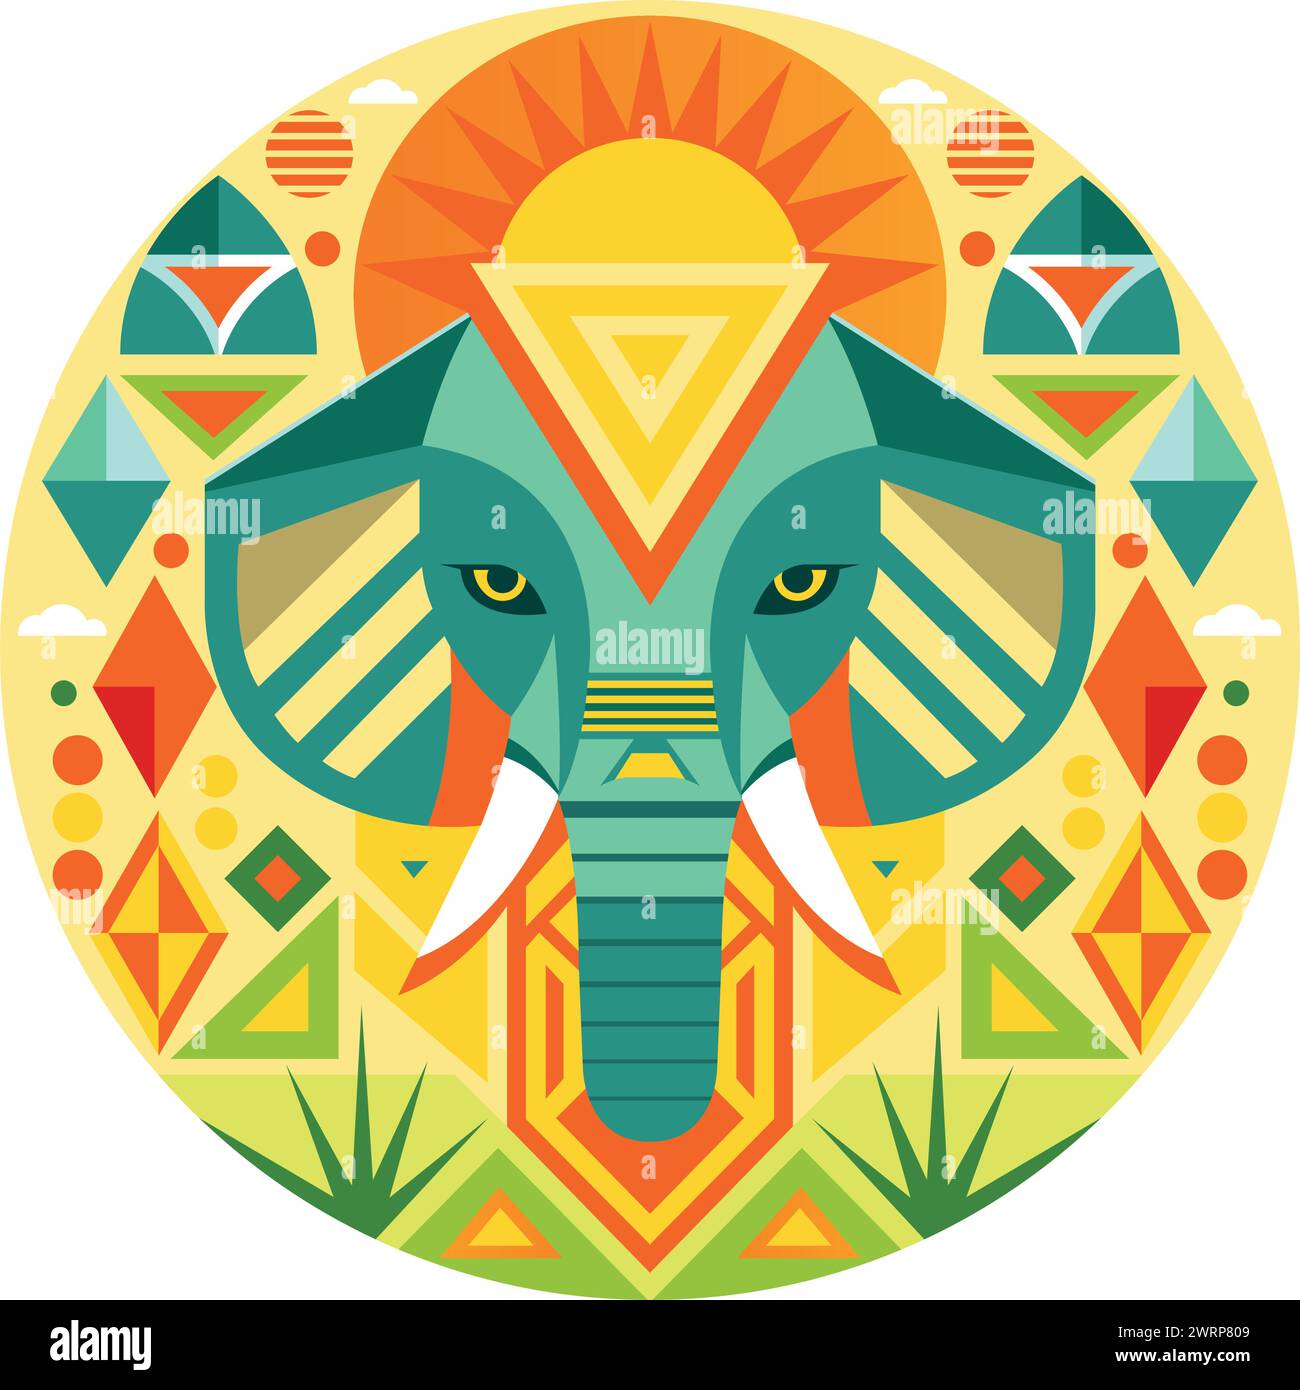 Vue avant du masque africain en forme de tête d'éléphant dans un style géométrique avec des couleurs chaudes. Image vectorielle Illustration de Vecteur